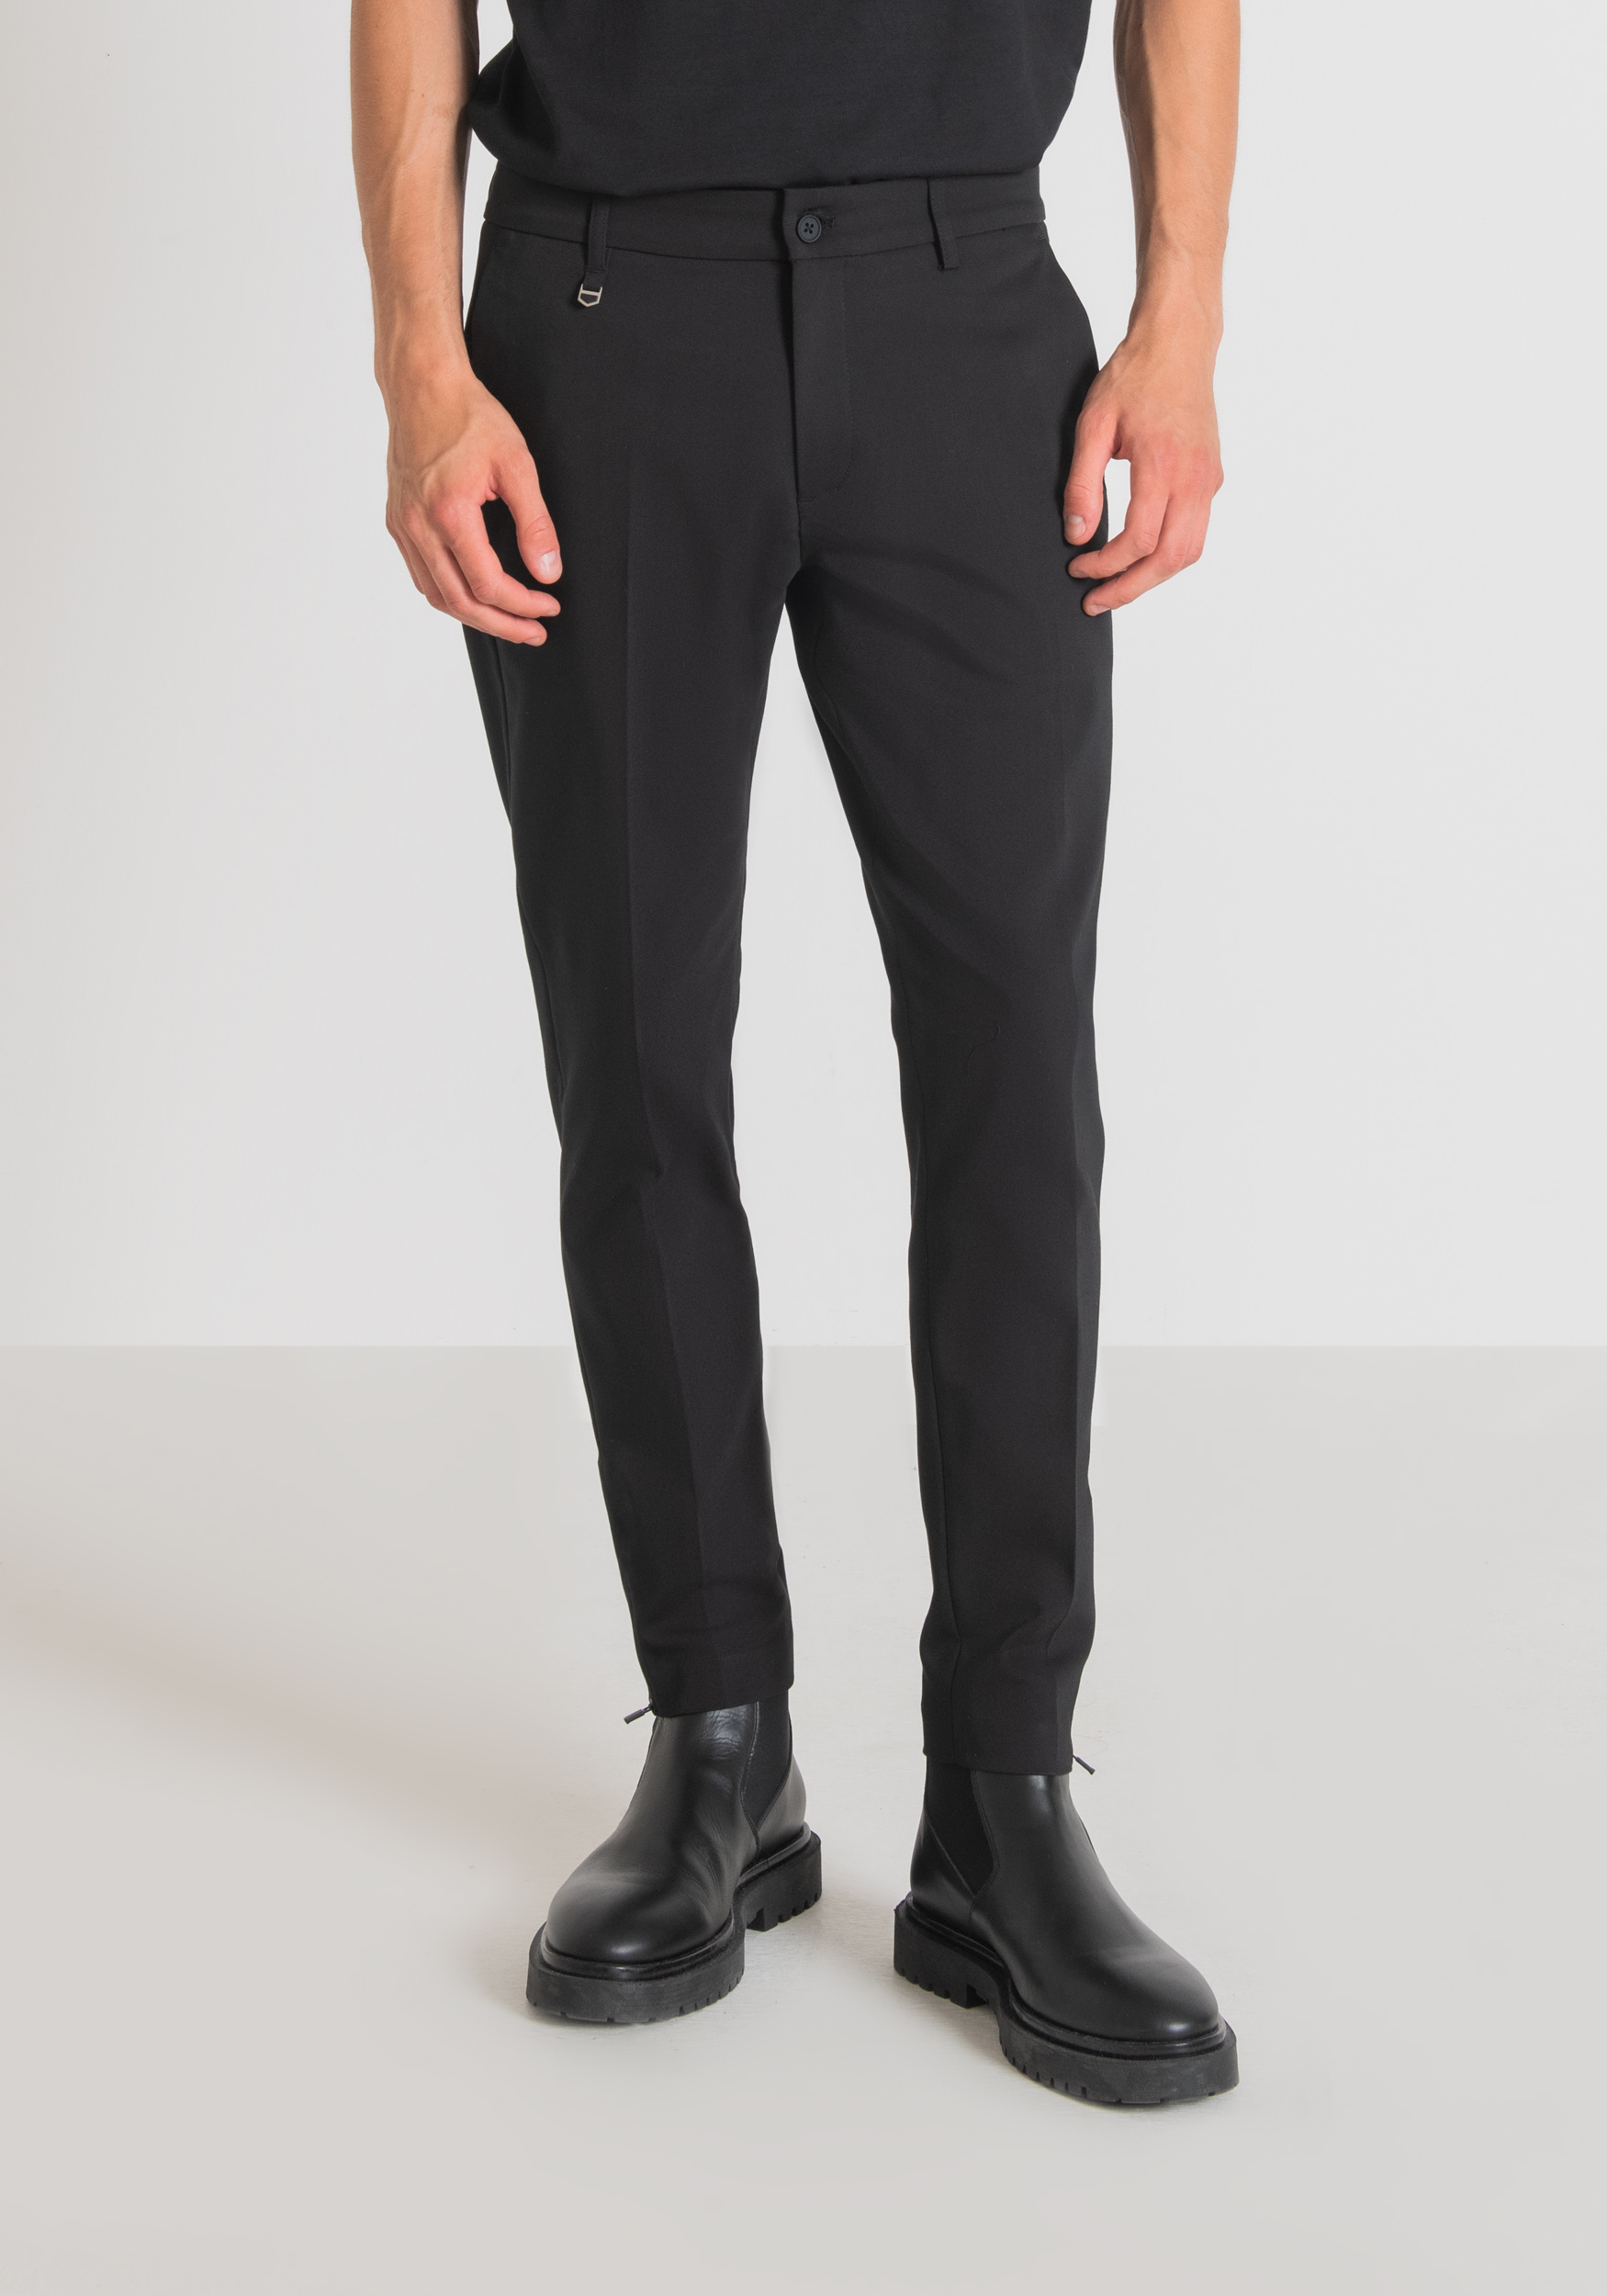 Antony Morato Pantalon Coupe Skinny Thom En Coton Stretch Melange Avec Zip Sur Le Bas Noir | Homme Pantalons